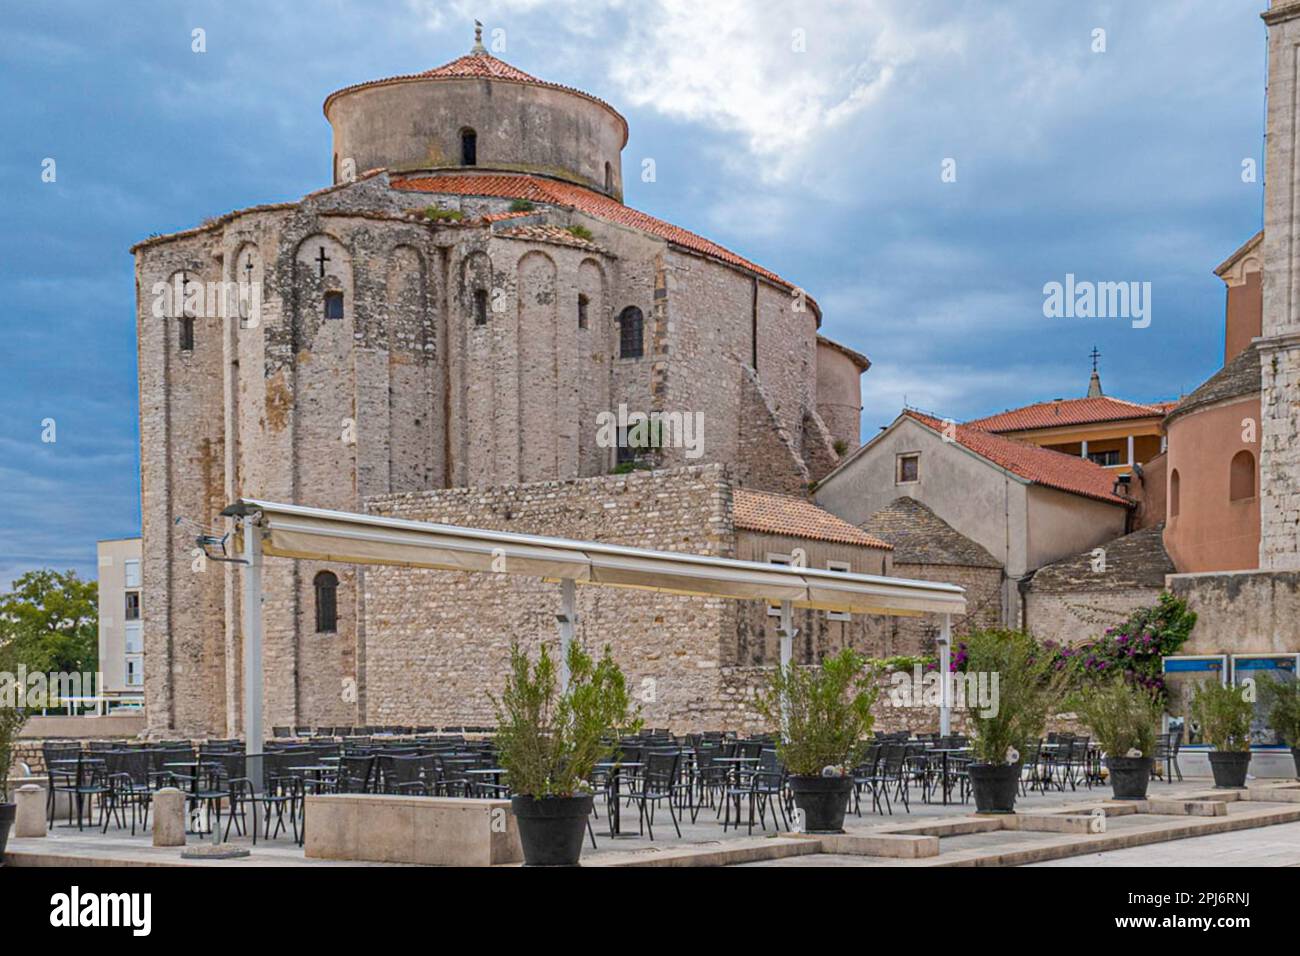 L'église Saint-Donat est l'un des monuments les plus importants de la ville de Zadar, en Croatie. Elle a été construite au 9ème siècle sur les fondati Banque D'Images